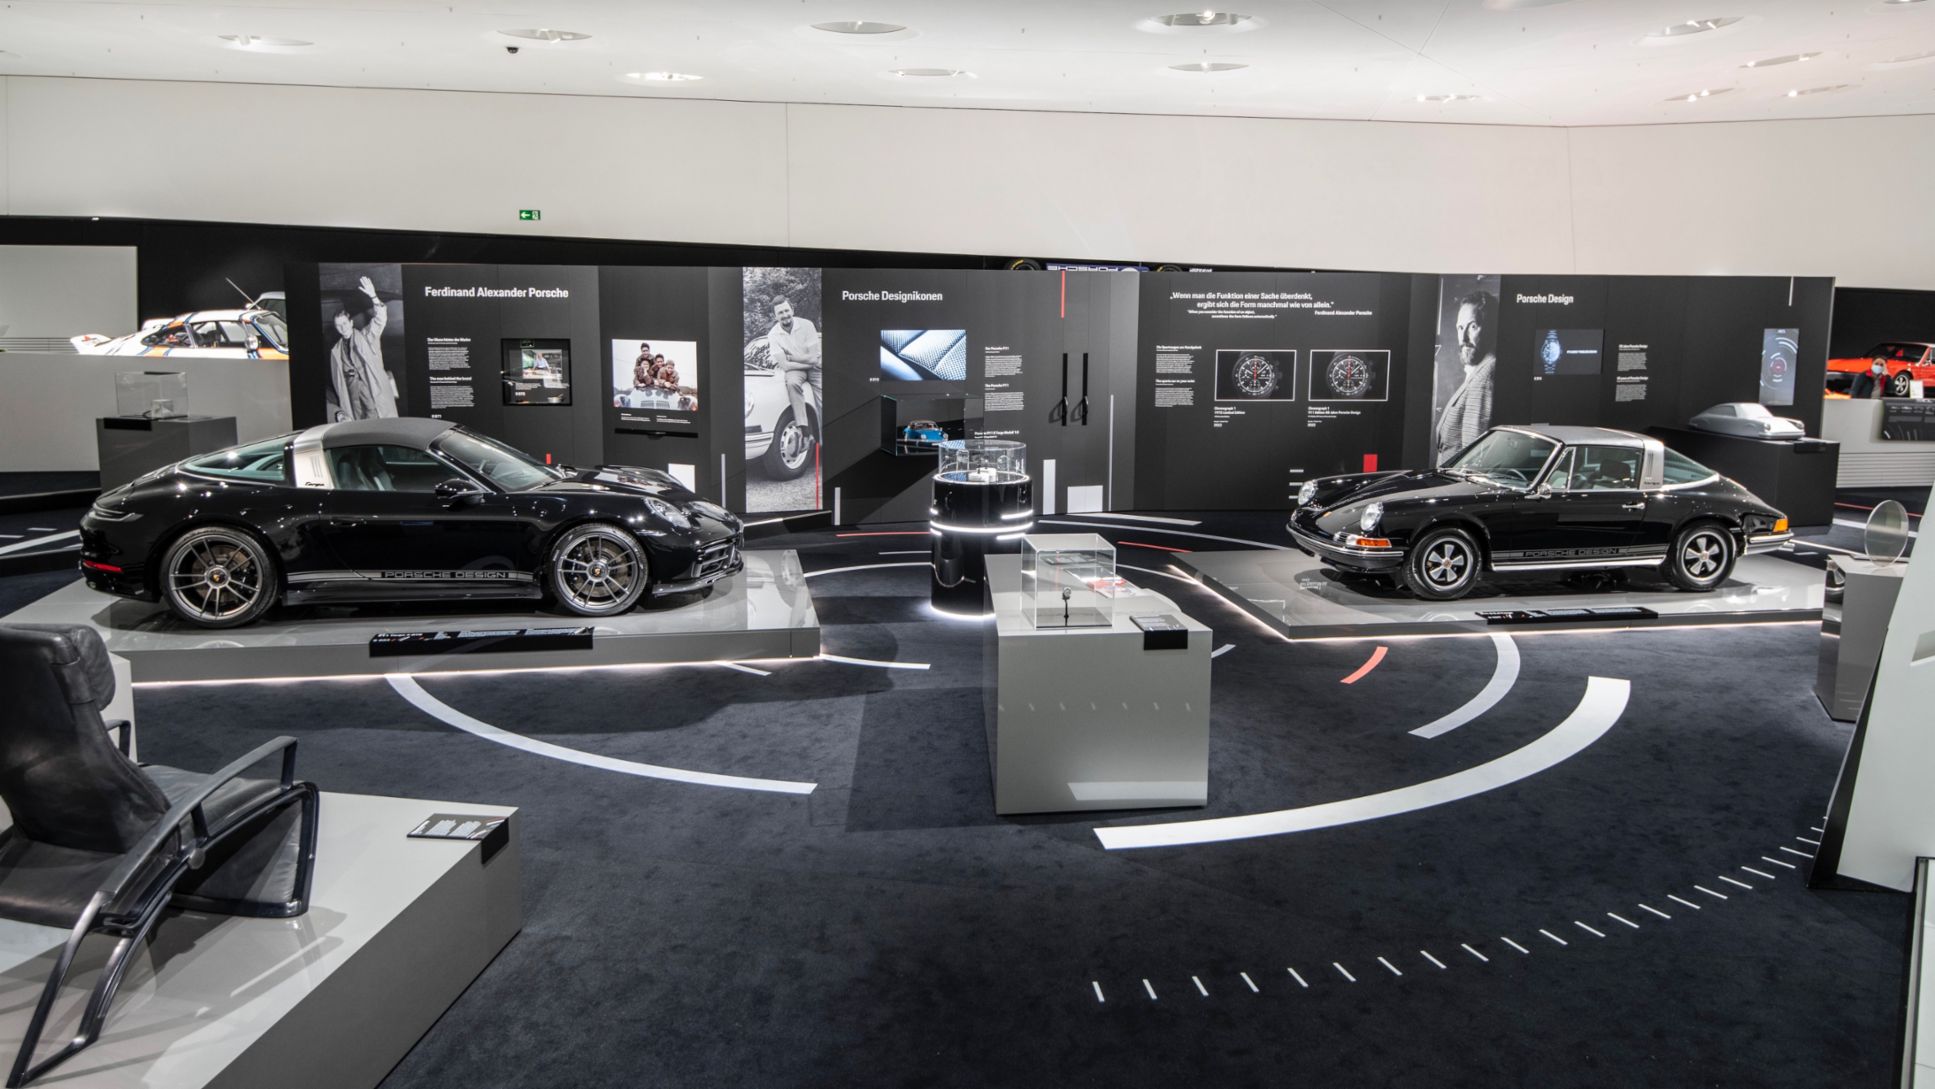 911 S 2.4 Targa, 911 Edition 50 Jahre Porsche Design, Sonderausstellung 50 Jahre Porsche Design, Porsche Museum, 2022, Porsche AG